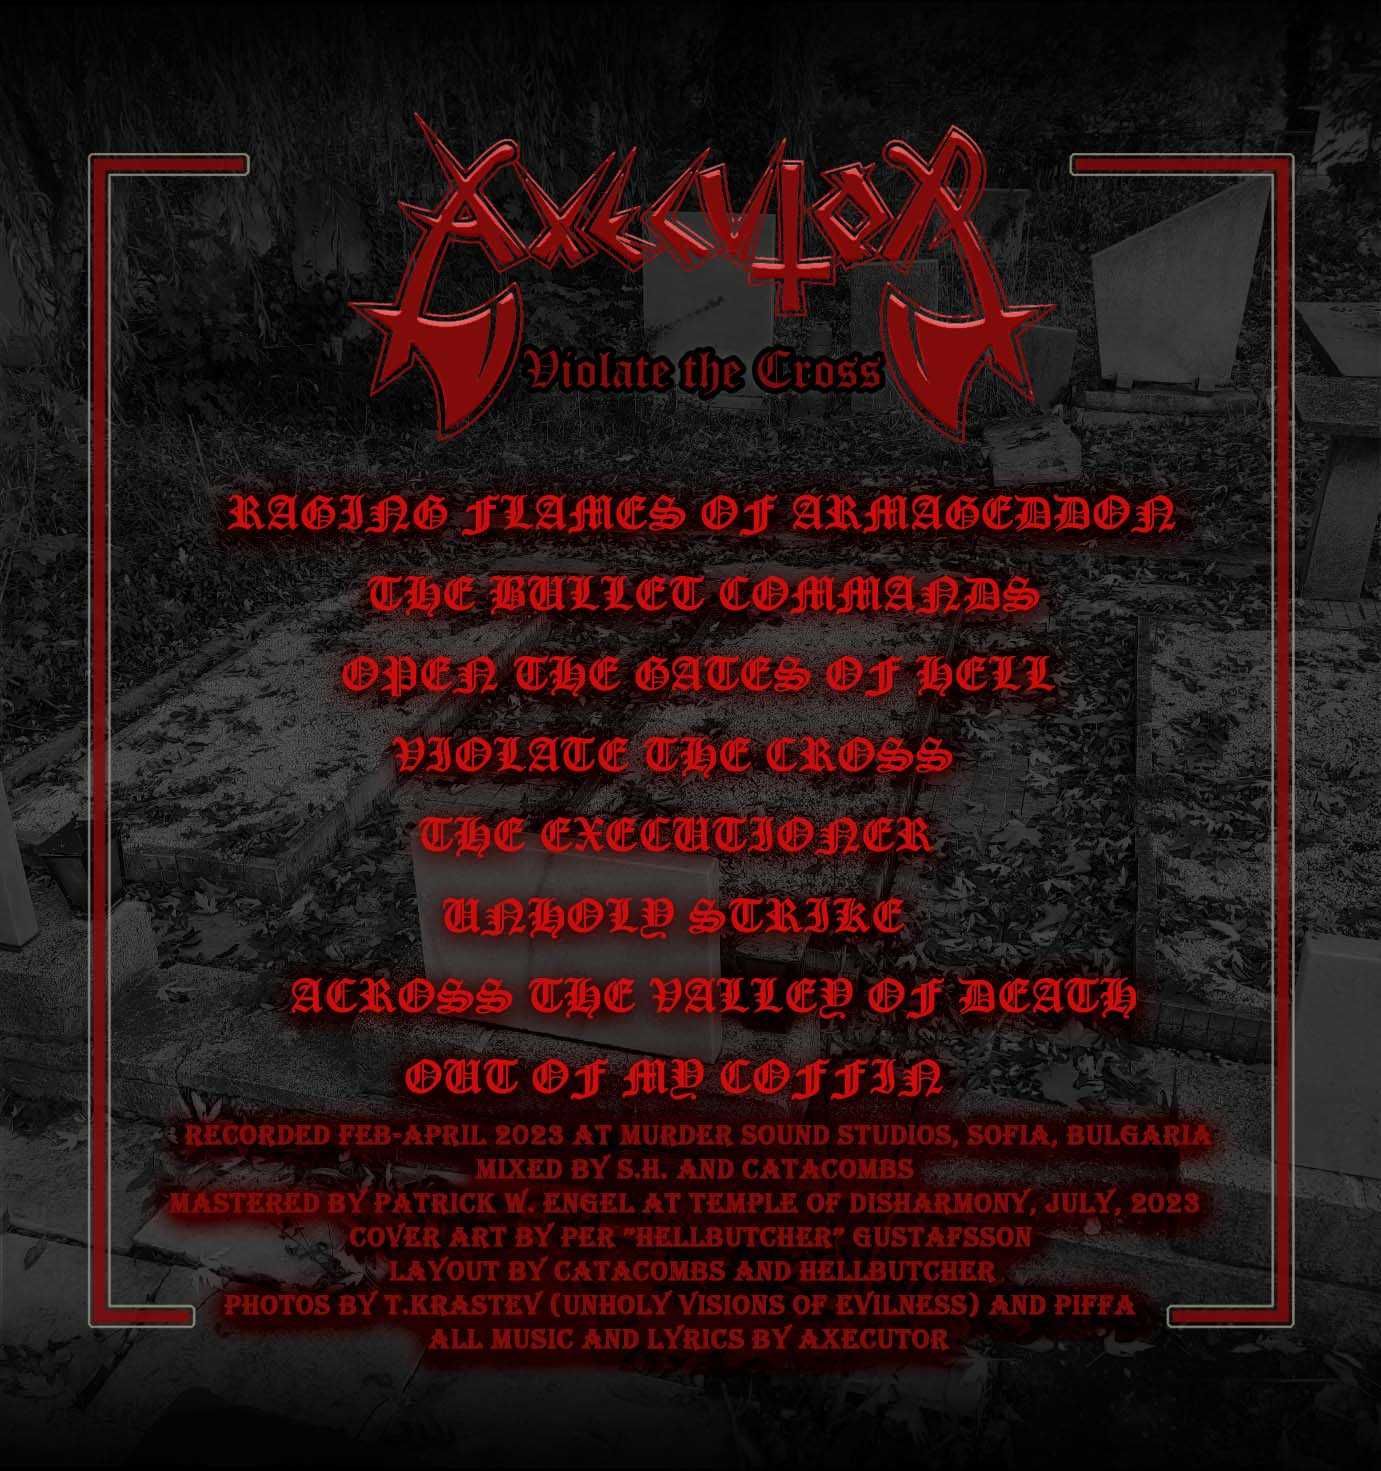 Axecutor - metal band audio CD Violate the Cross black thrash metal